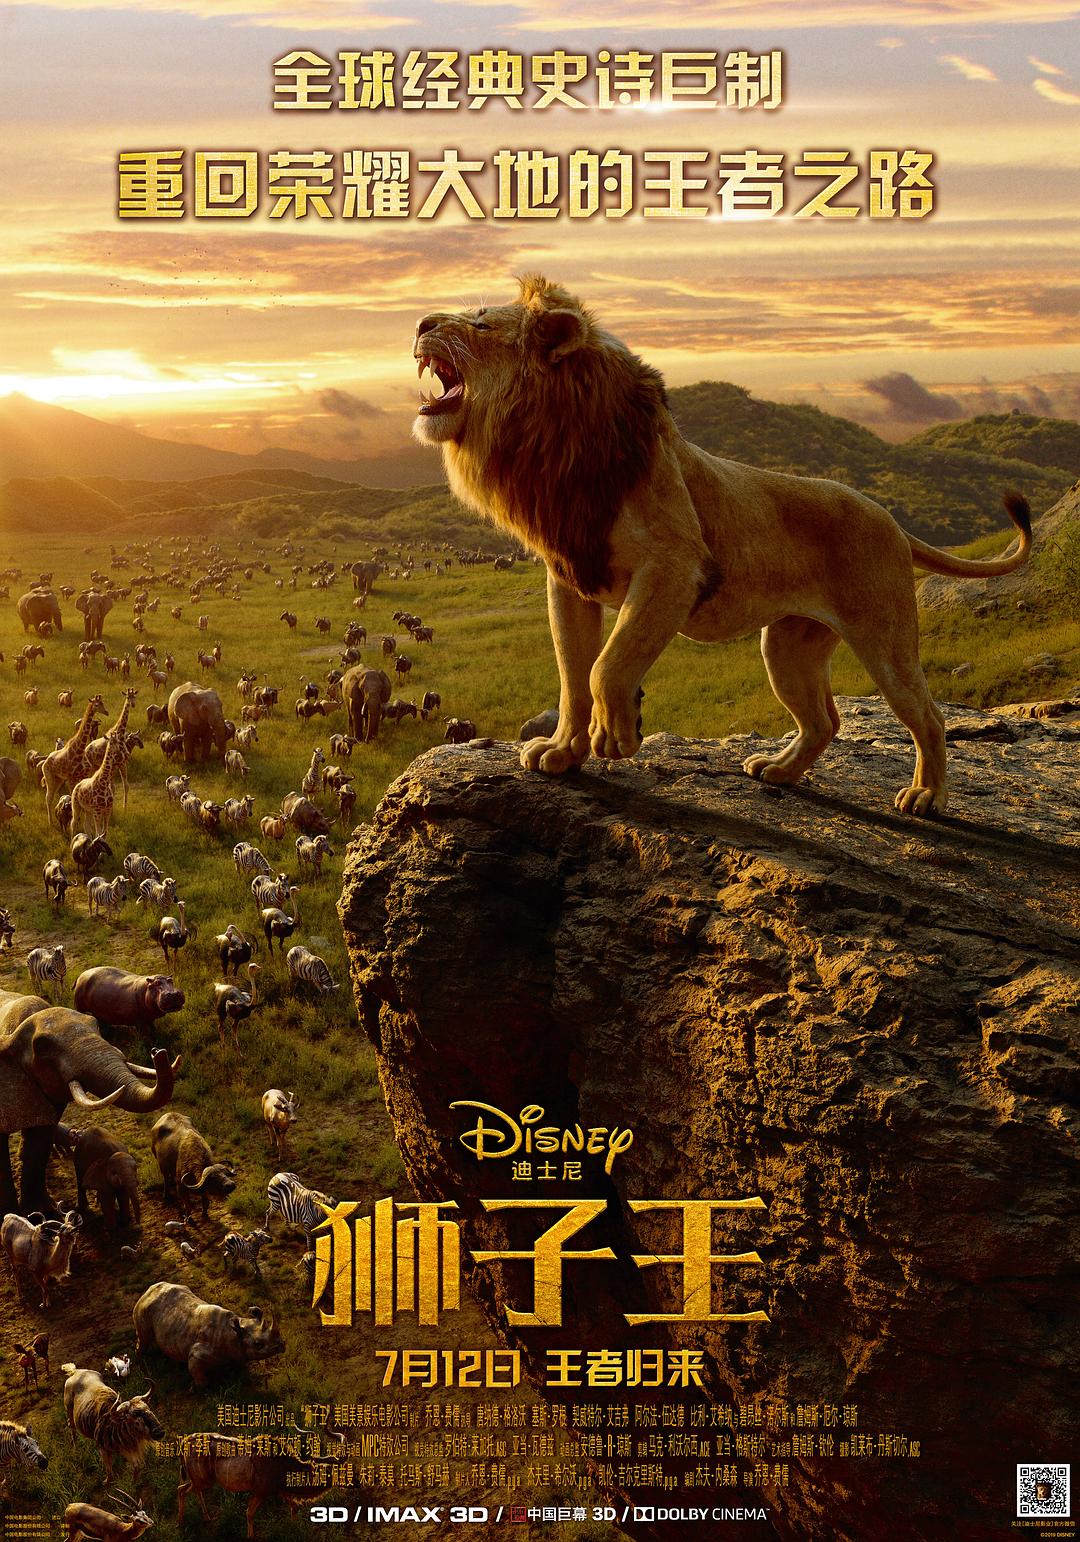 狮子王/狮子王真人版 The.Lion.King.2019.1080p.3D.BluRay.AVC.DTS-HD.MA.7.1-EXTREME 44.65GB-1.png